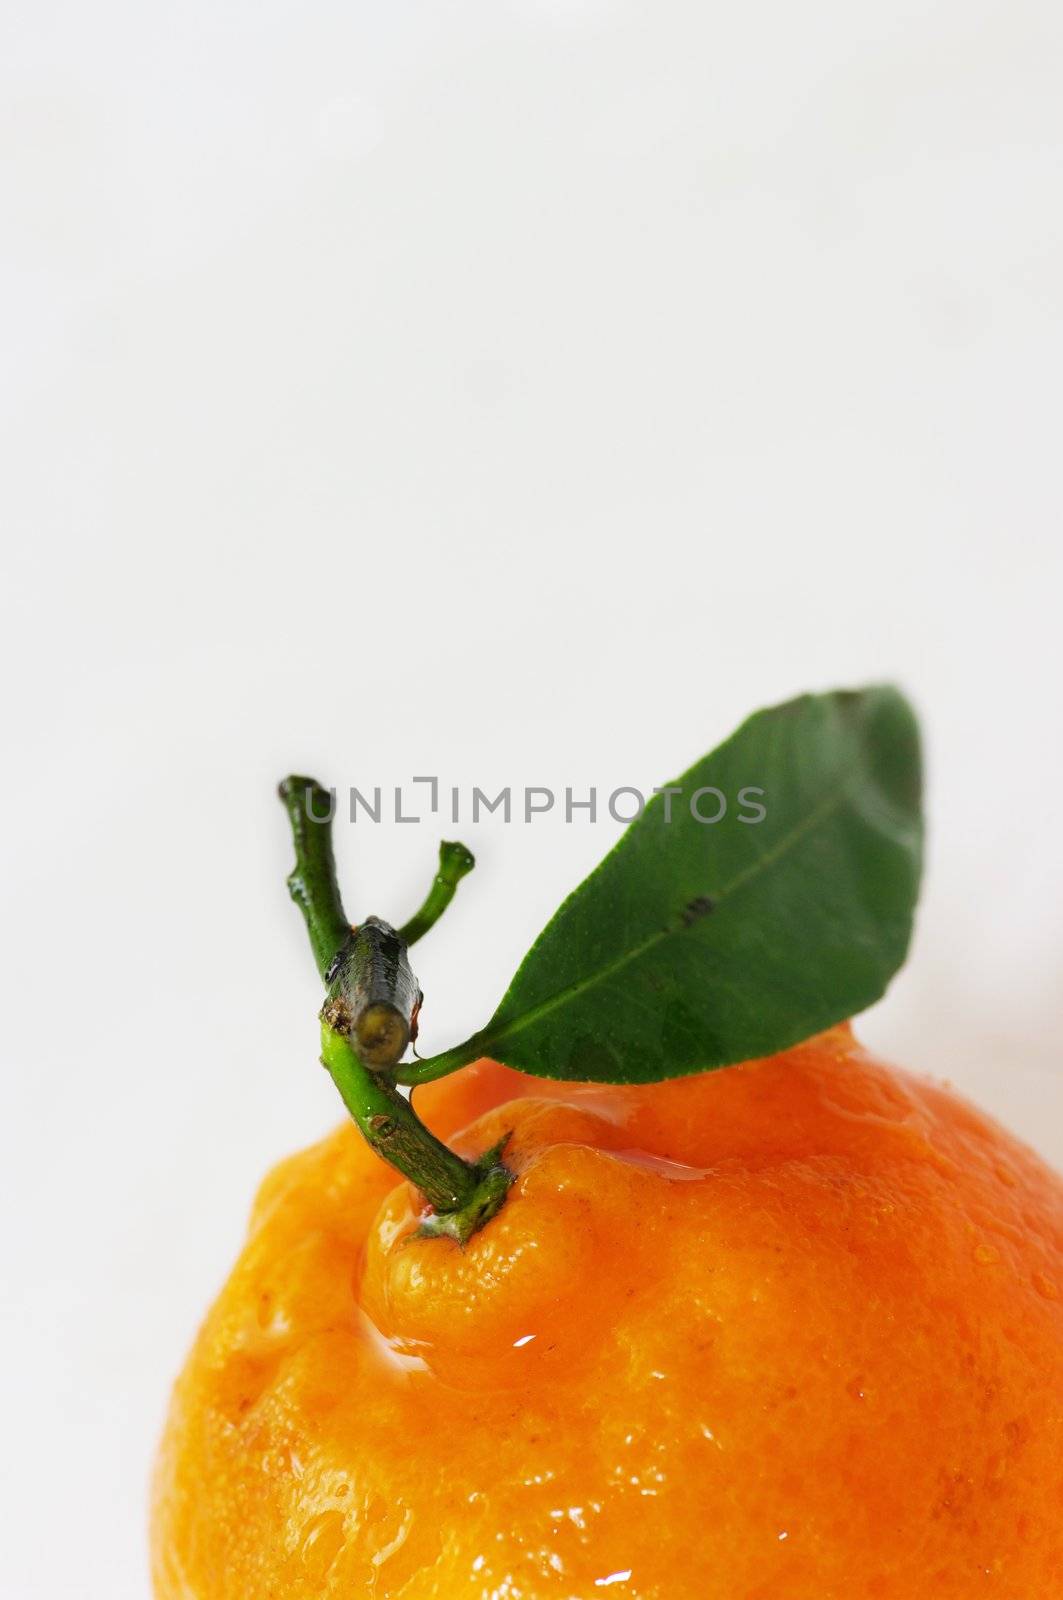 Fresh orange jumping into water